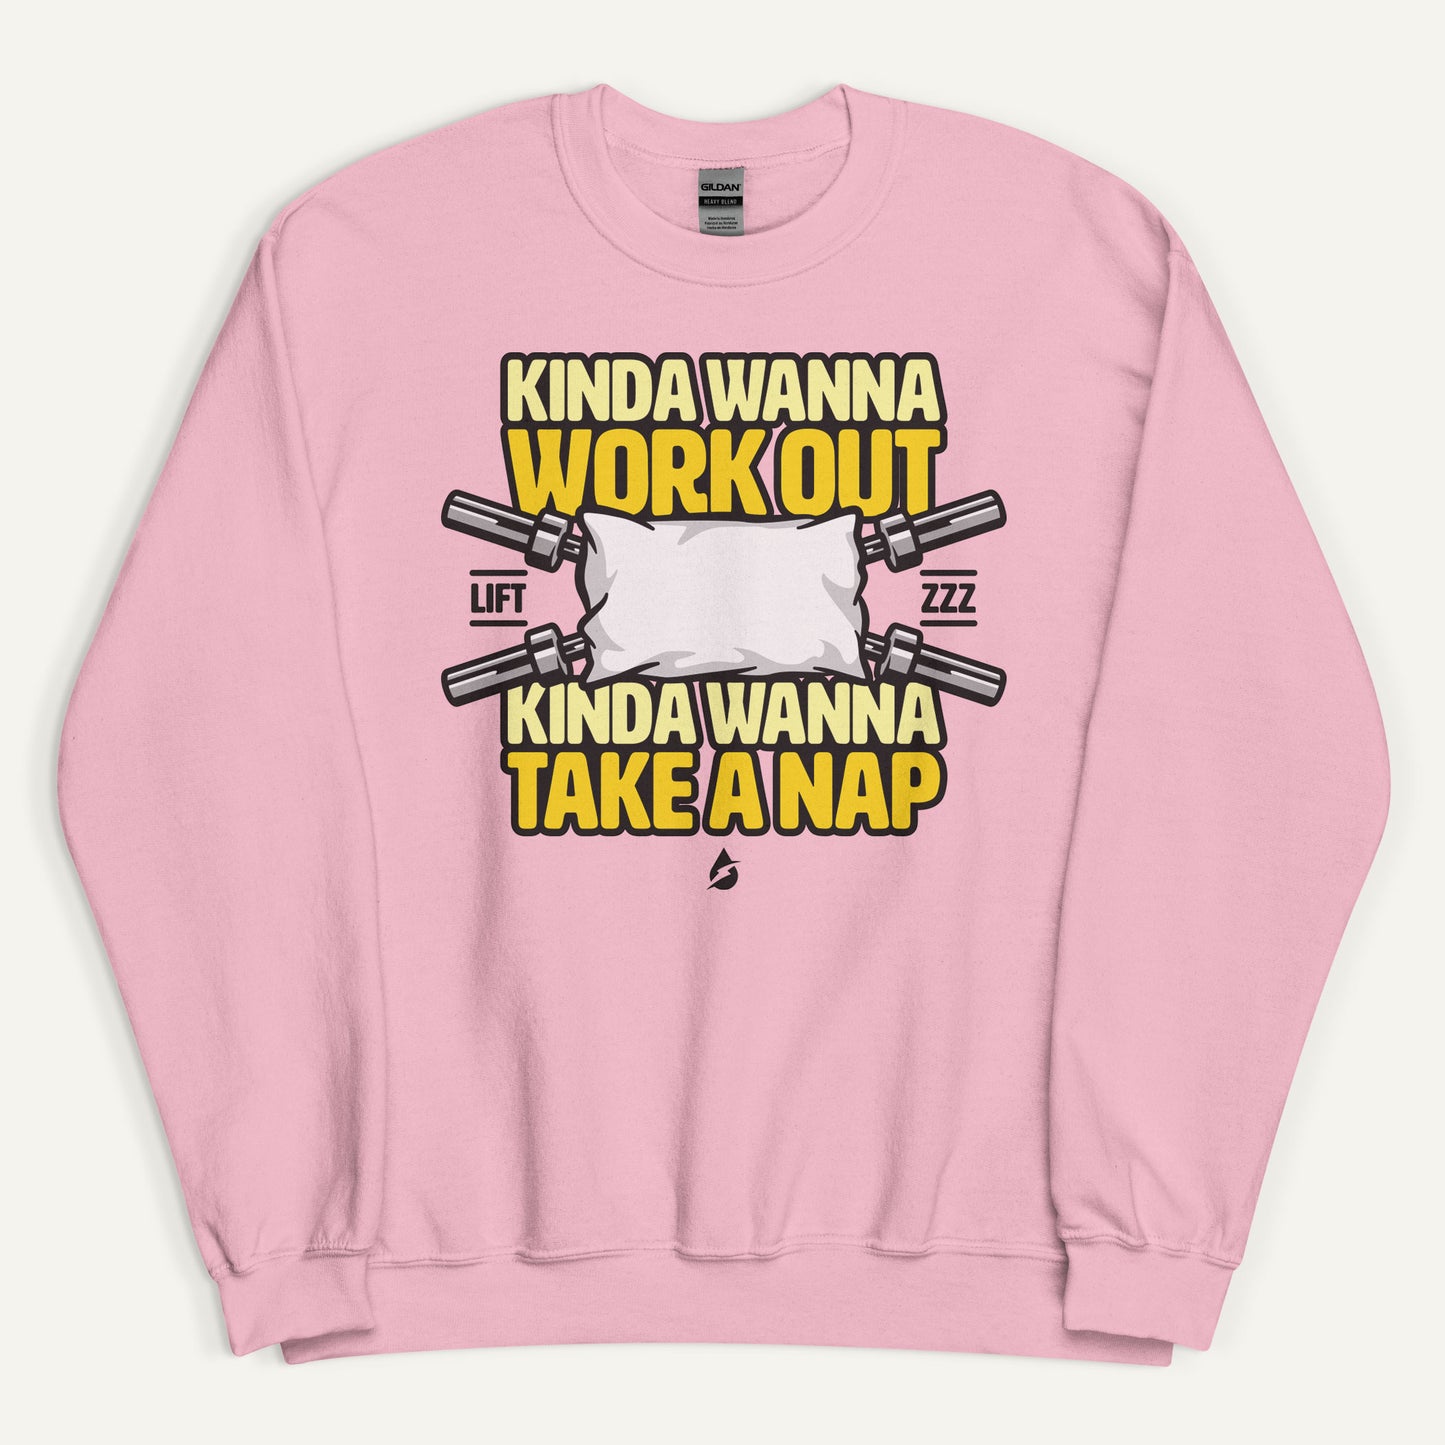 Kinda Wanna Work Out Kinda Wanna Take A Nap Sweatshirt